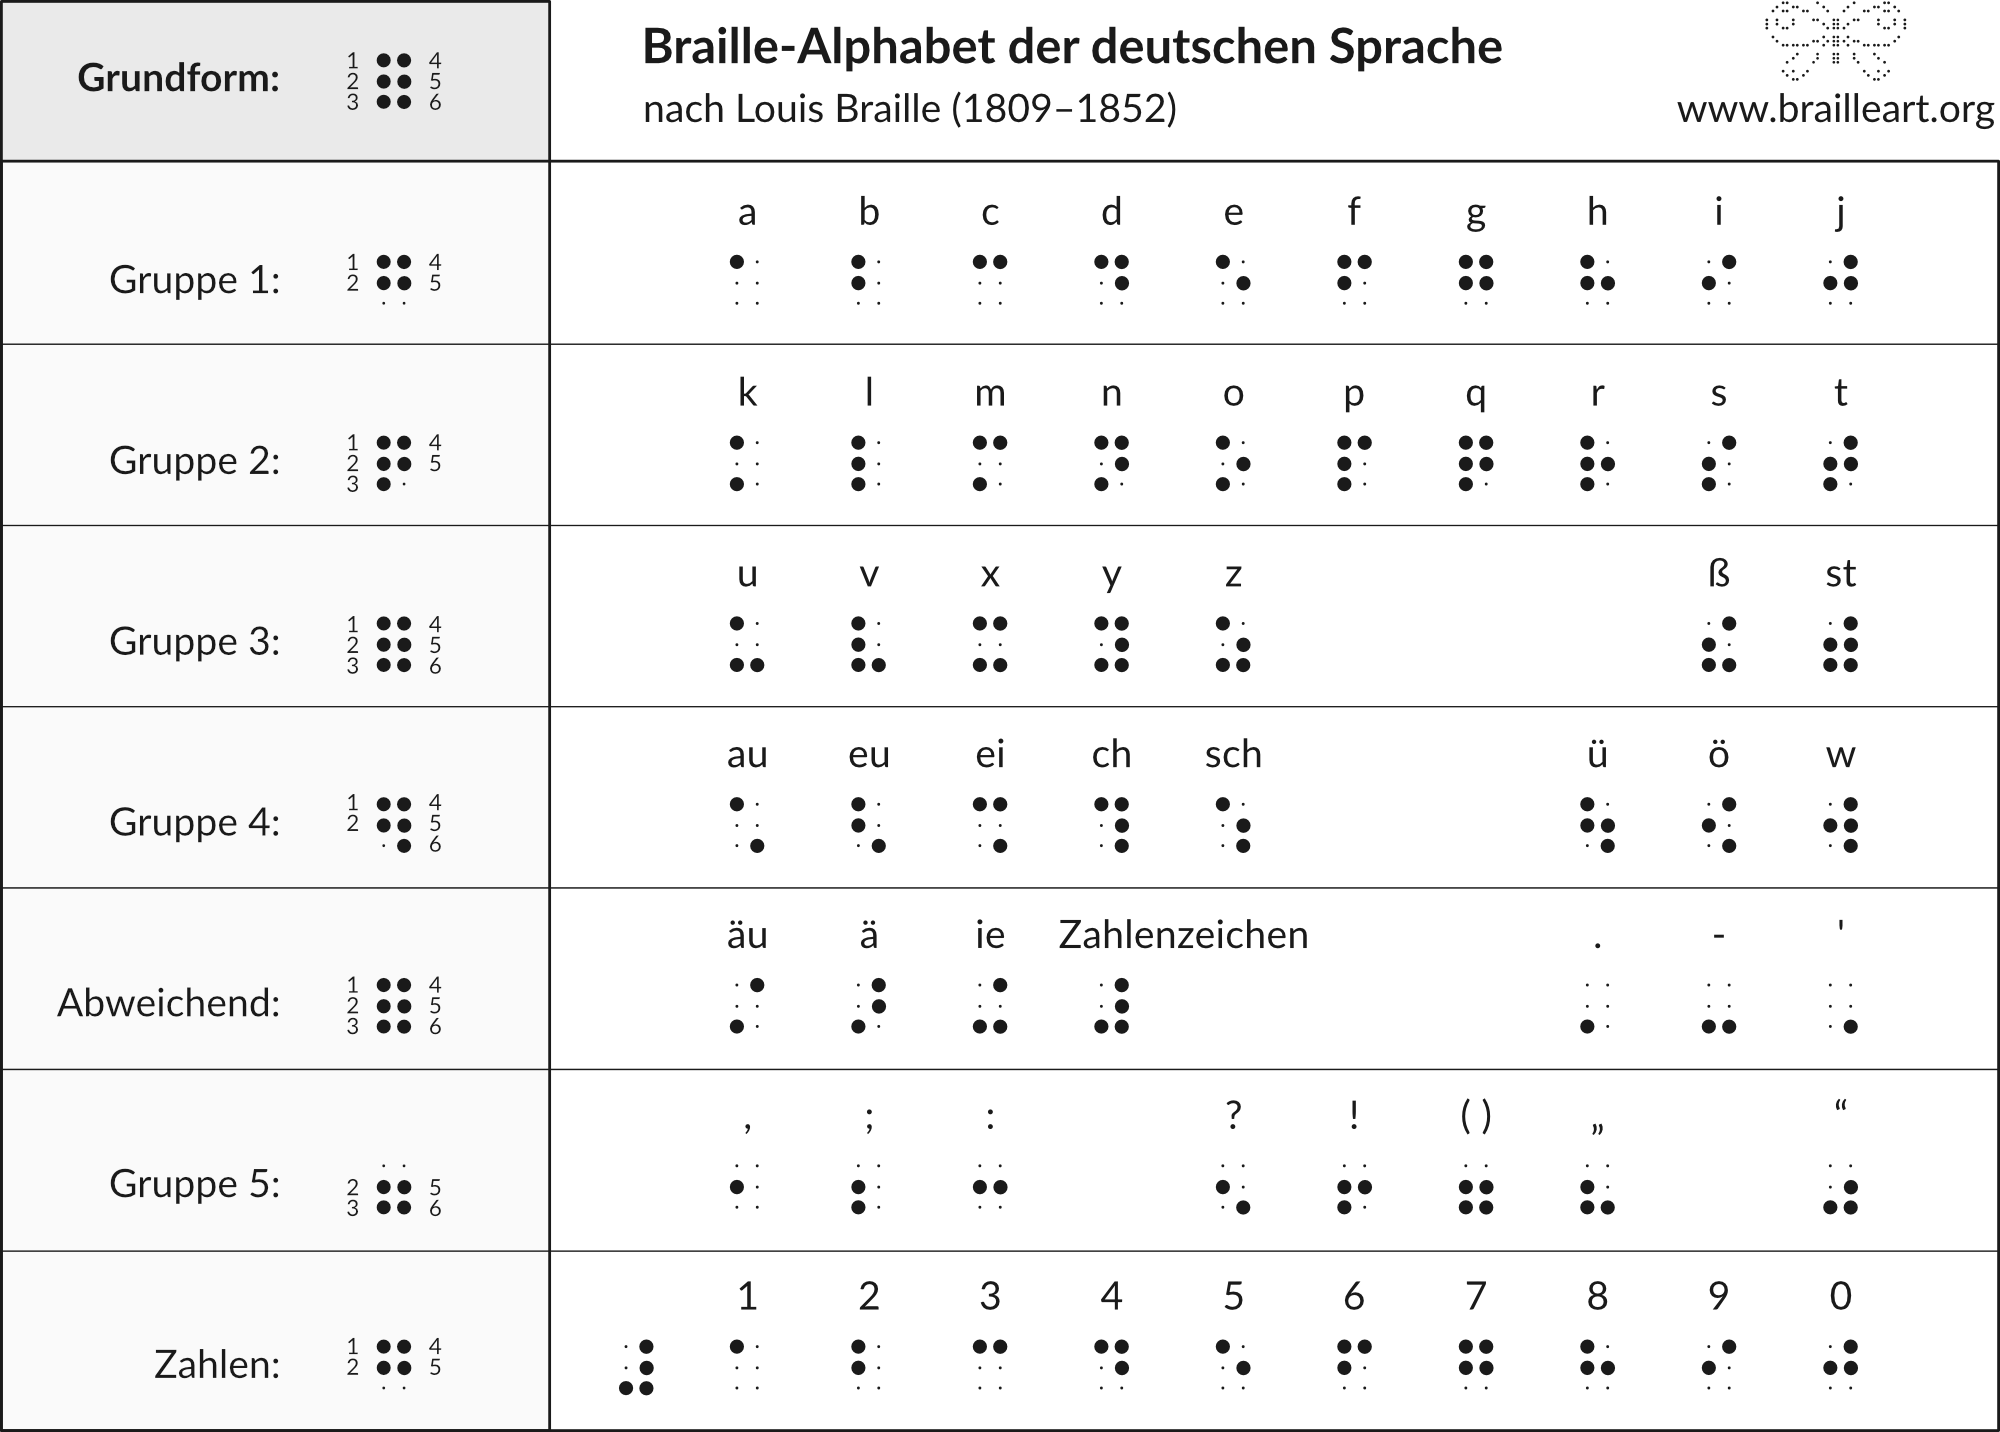 Braille-Alphabet der deutschen Sprache nach Louis Braille